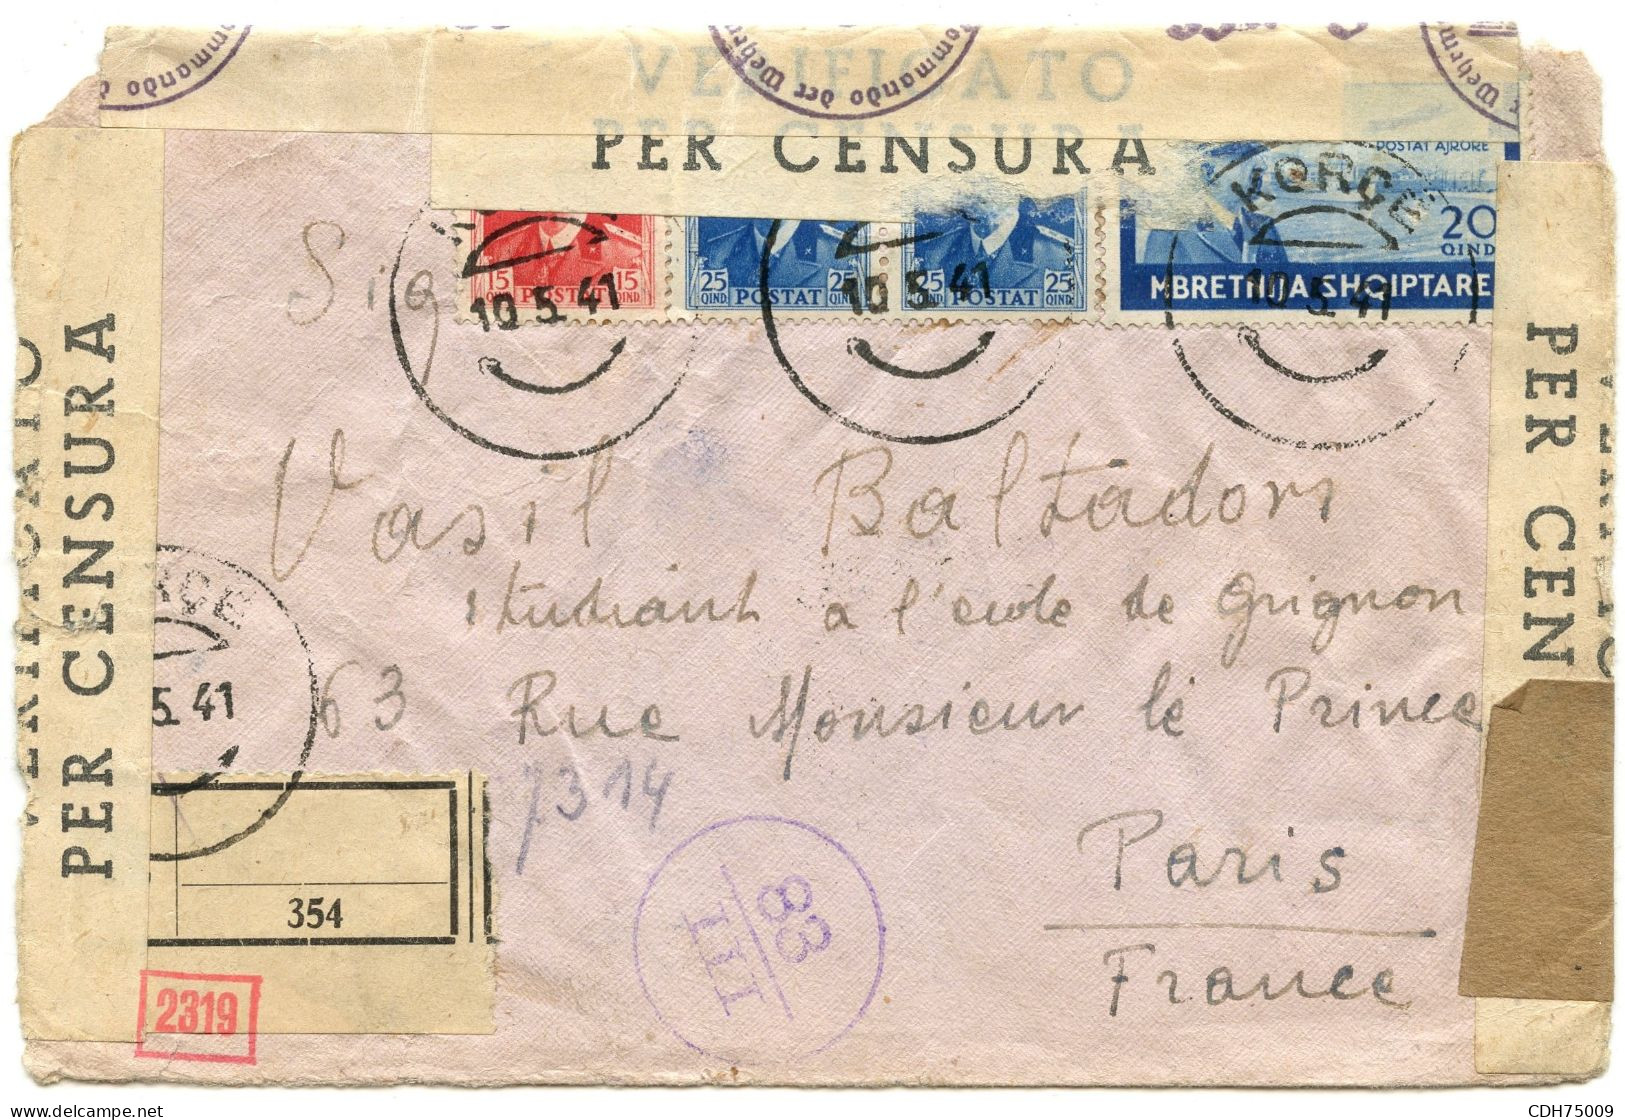 ITALIE - LETTRE RECOMMANDEE CENSUREE DE KORCE POUR PARIS, 1941 - Albanie